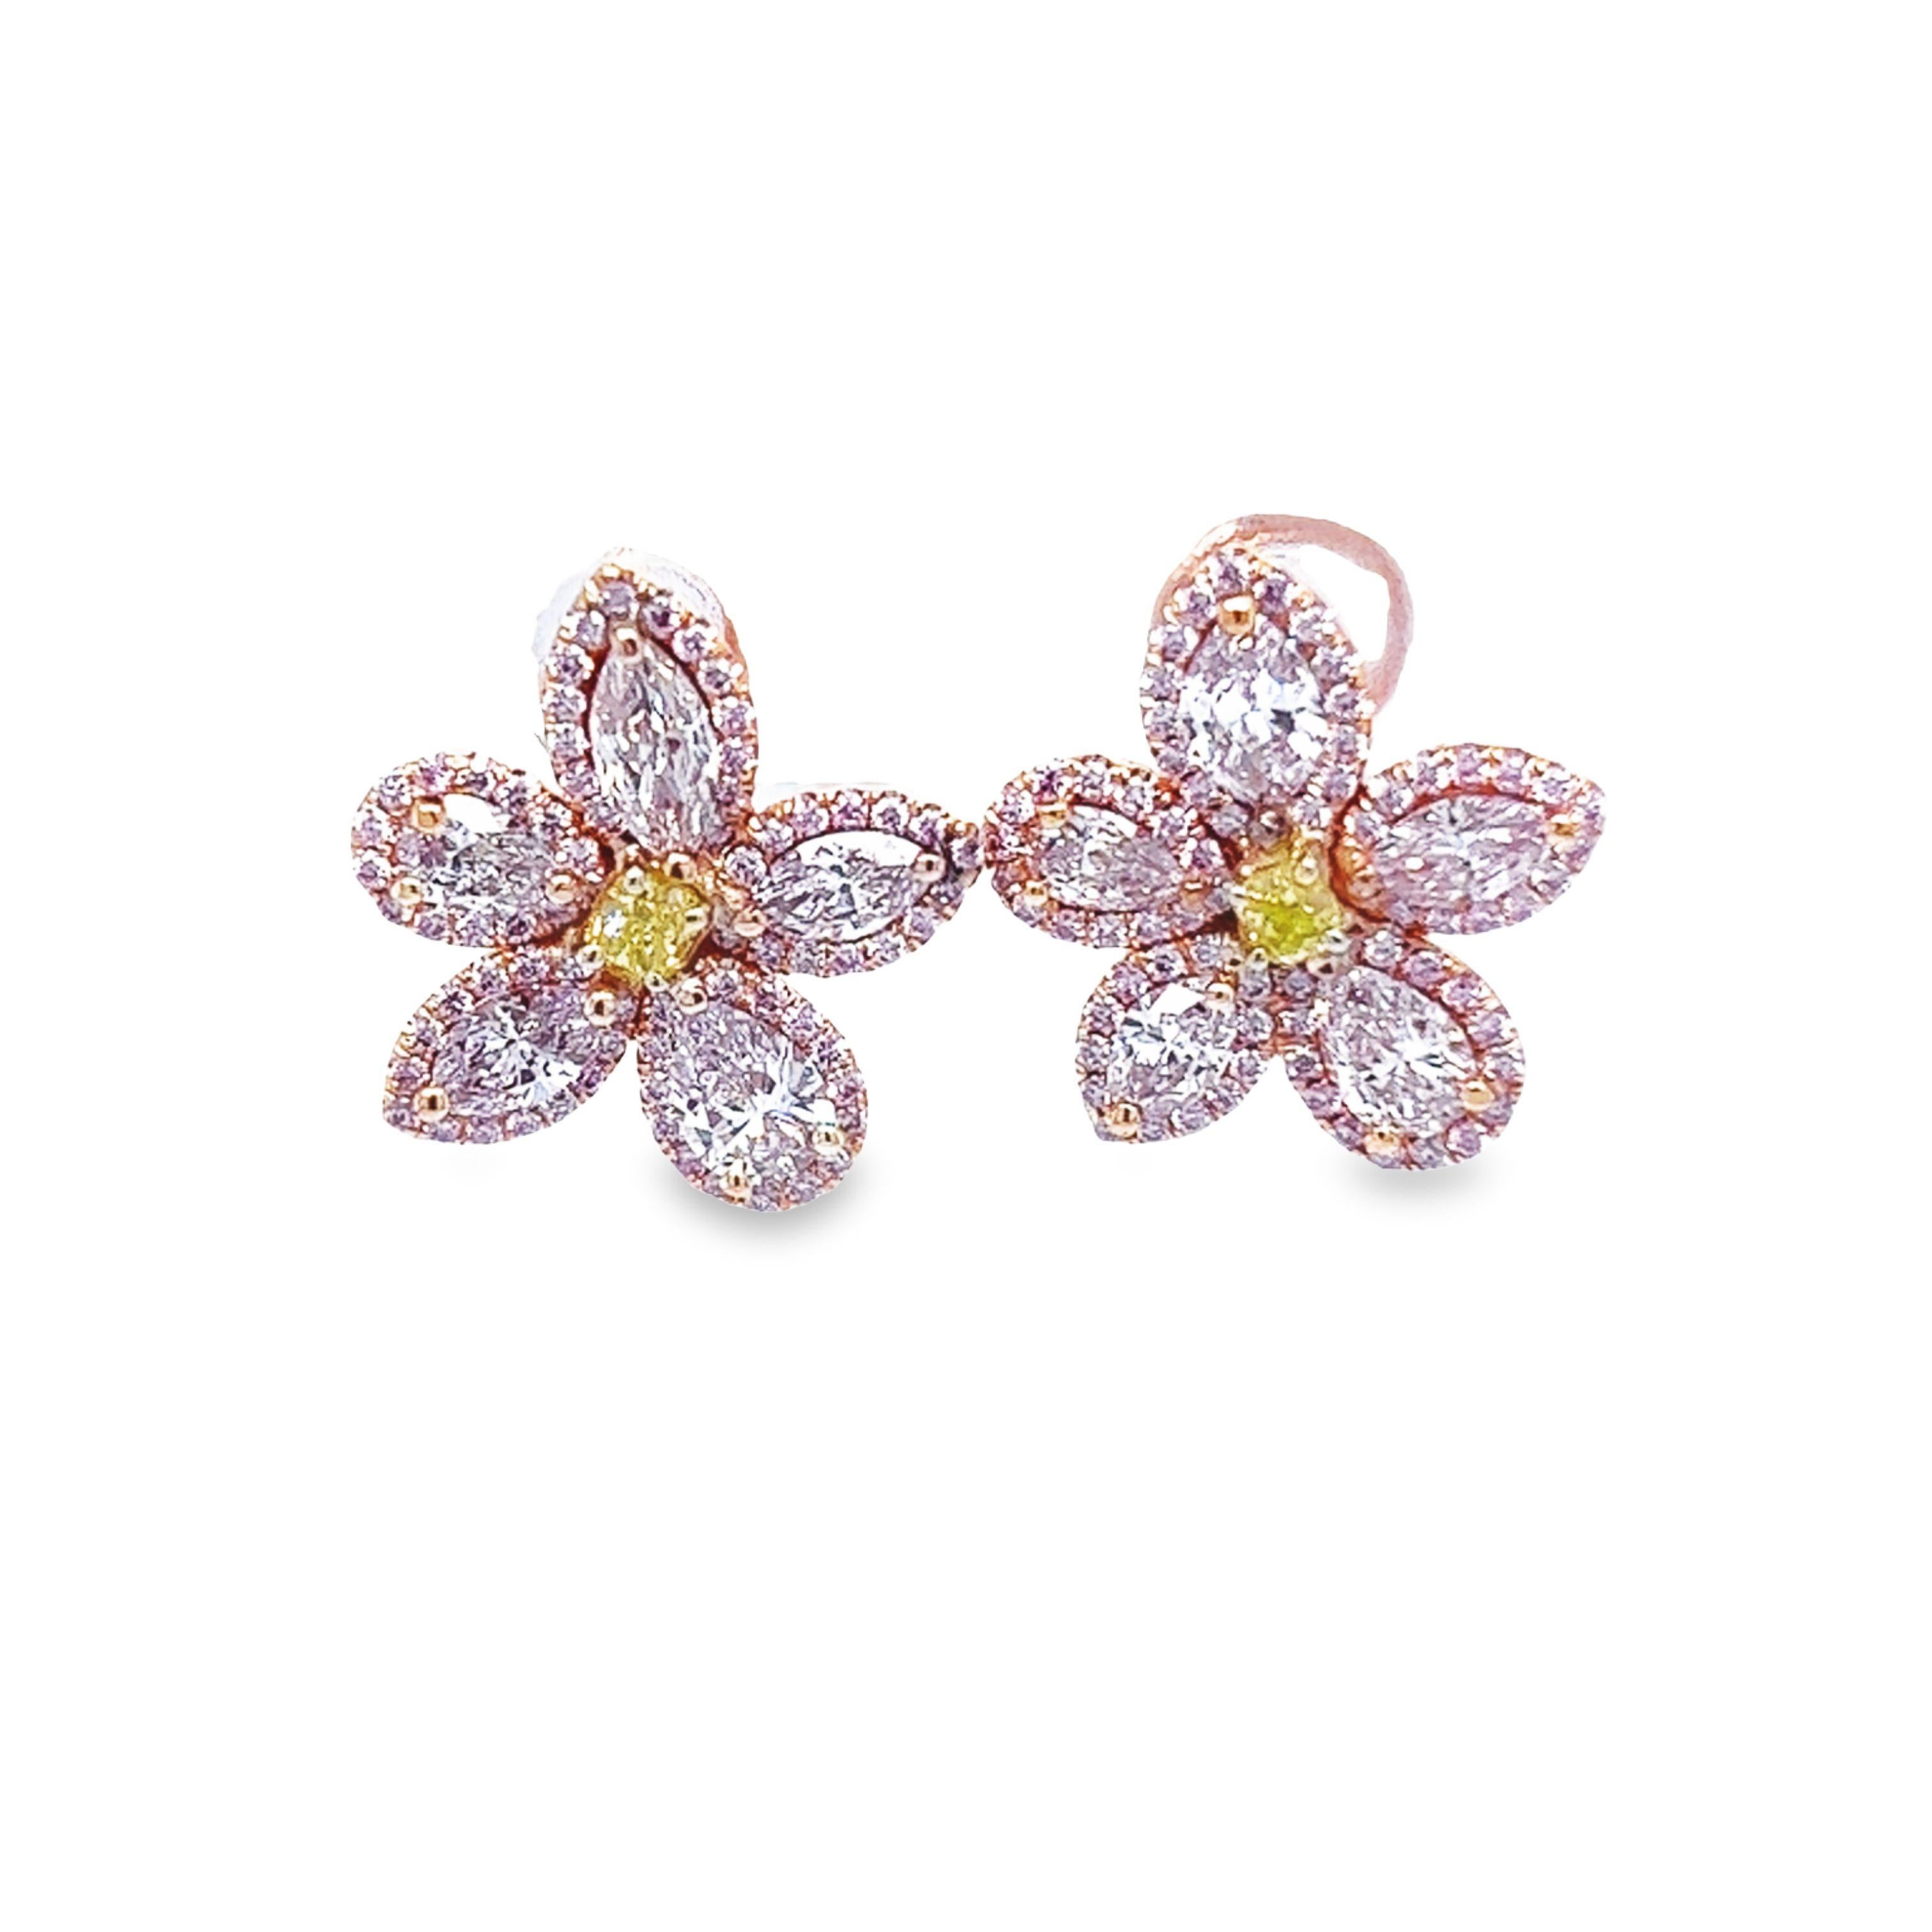 David Rosenberg 2.35 Carat Pink & Green GIA Flower Diamond Stud Earring For Sale 1